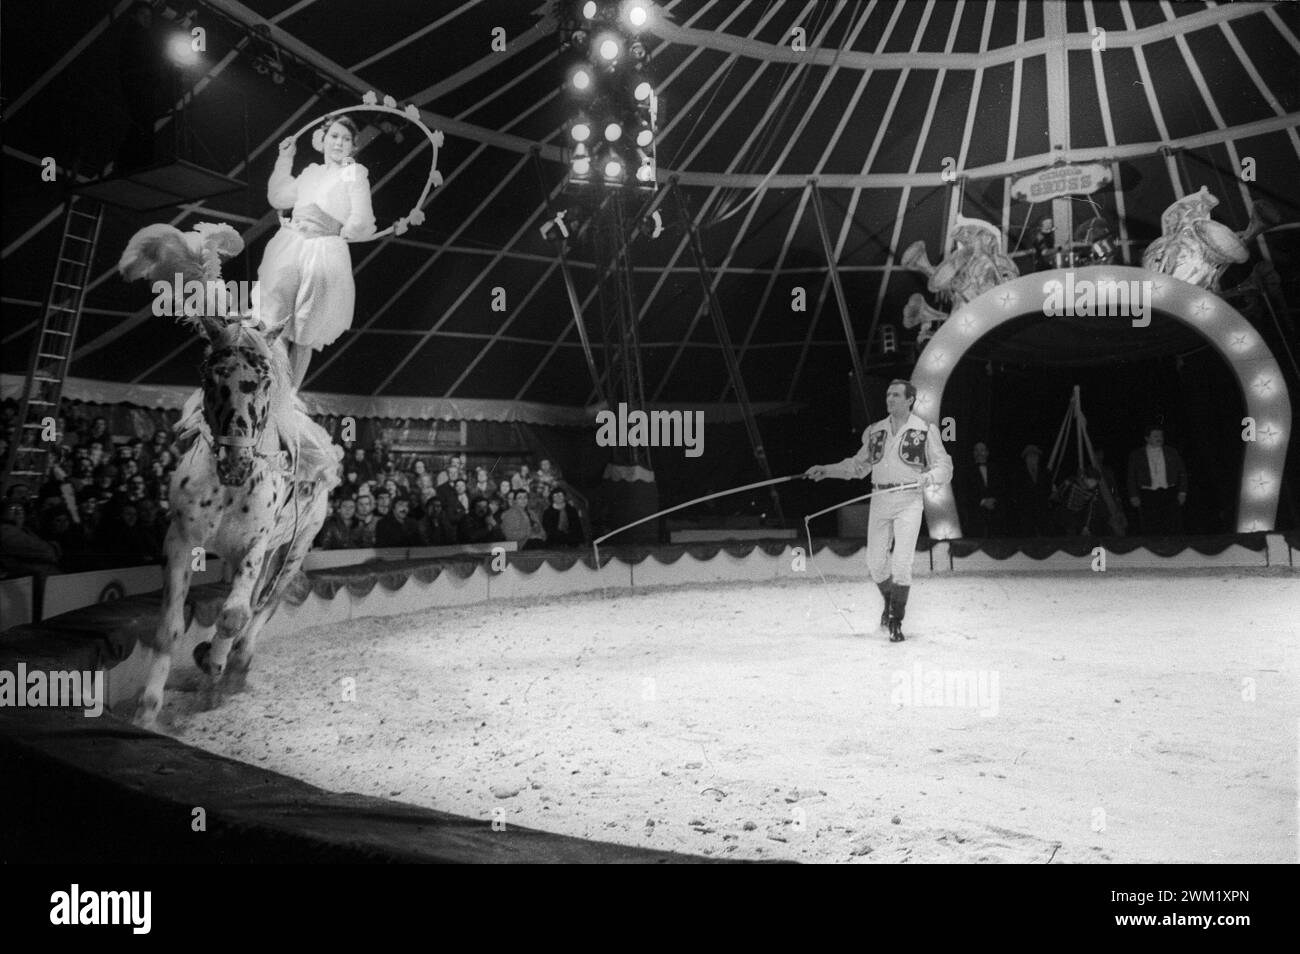 MME4742857 Carnevale di Venezia 1981. Il "Cirque l'Ancienne" (circo vecchio stile) di Alexis Grsss/Carnevale di Venezia 1981. Il Cirque l'Ancienne (circo all'antica) di Alexis Gruss -; (add.info.: Carnevale di Venezia 1981. Il "Cirque l'Ancienne" (circo vecchio stile) di Alexis Grsss/Carnevale di Venezia 1981. Il Cirque l'Ancienne (circo all'antica) di Alexis Gruss -); © Marcello Mencarini. Tutti i diritti riservati 2024. Foto Stock